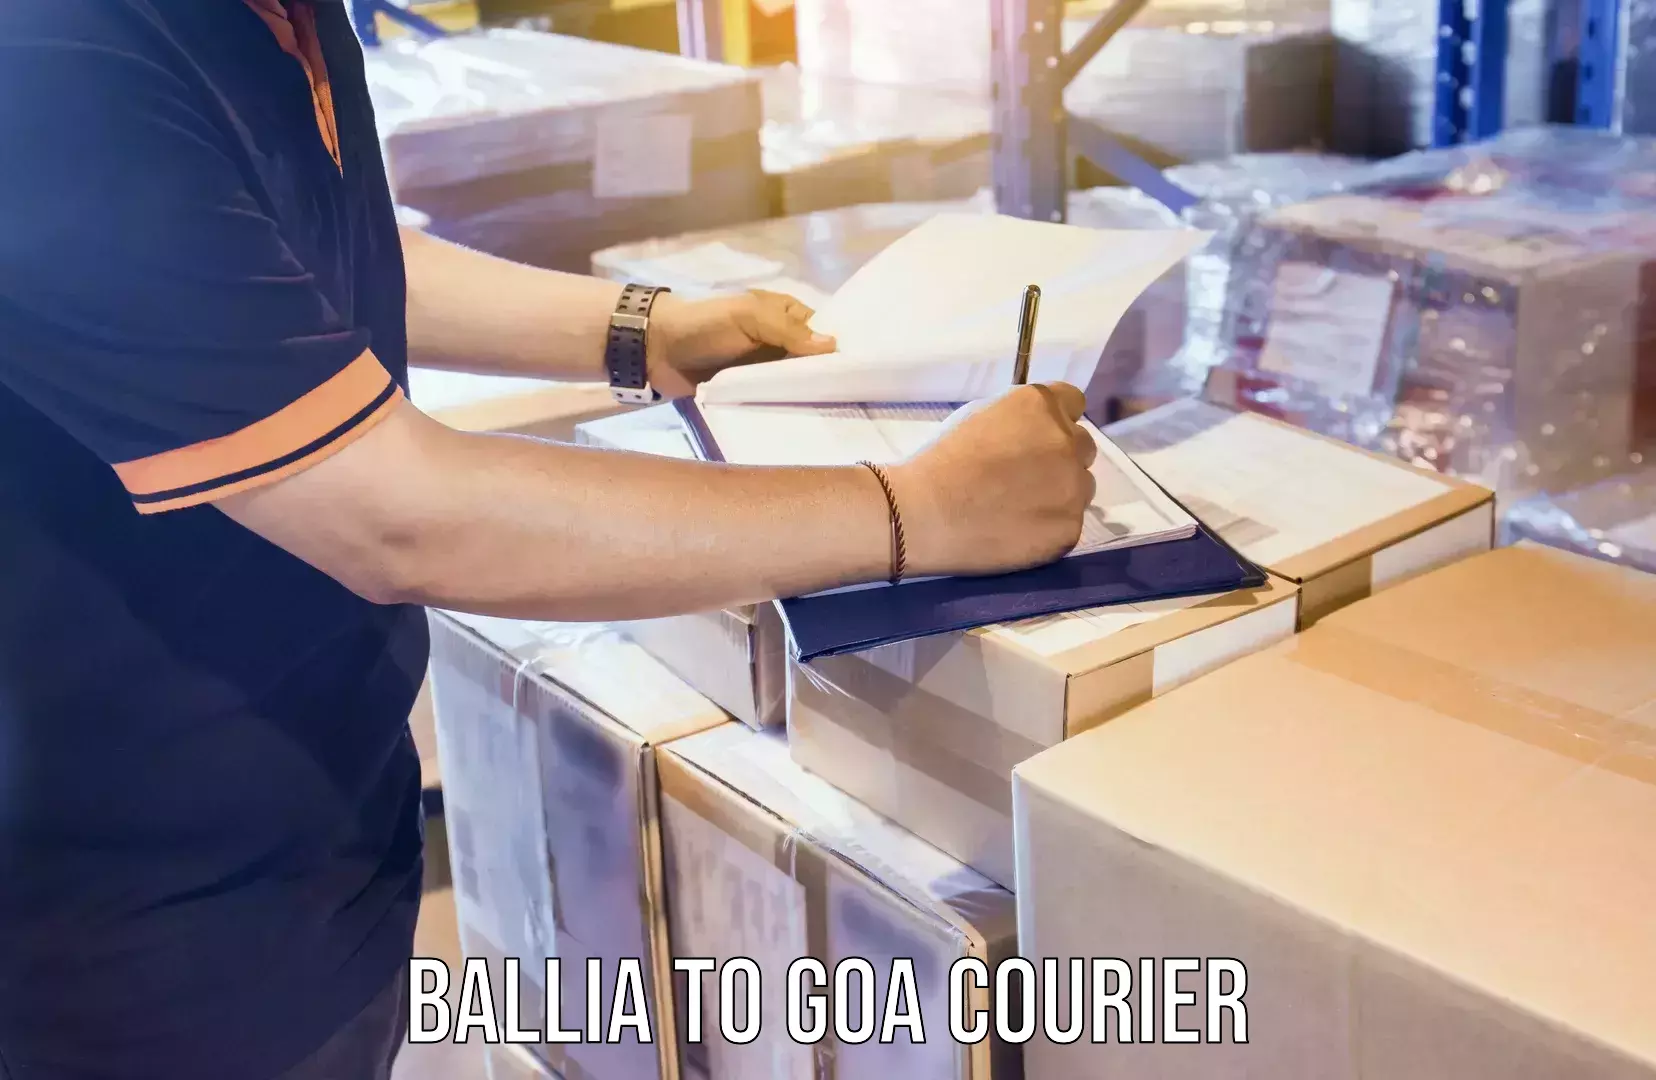 Postal and courier services Ballia to Goa